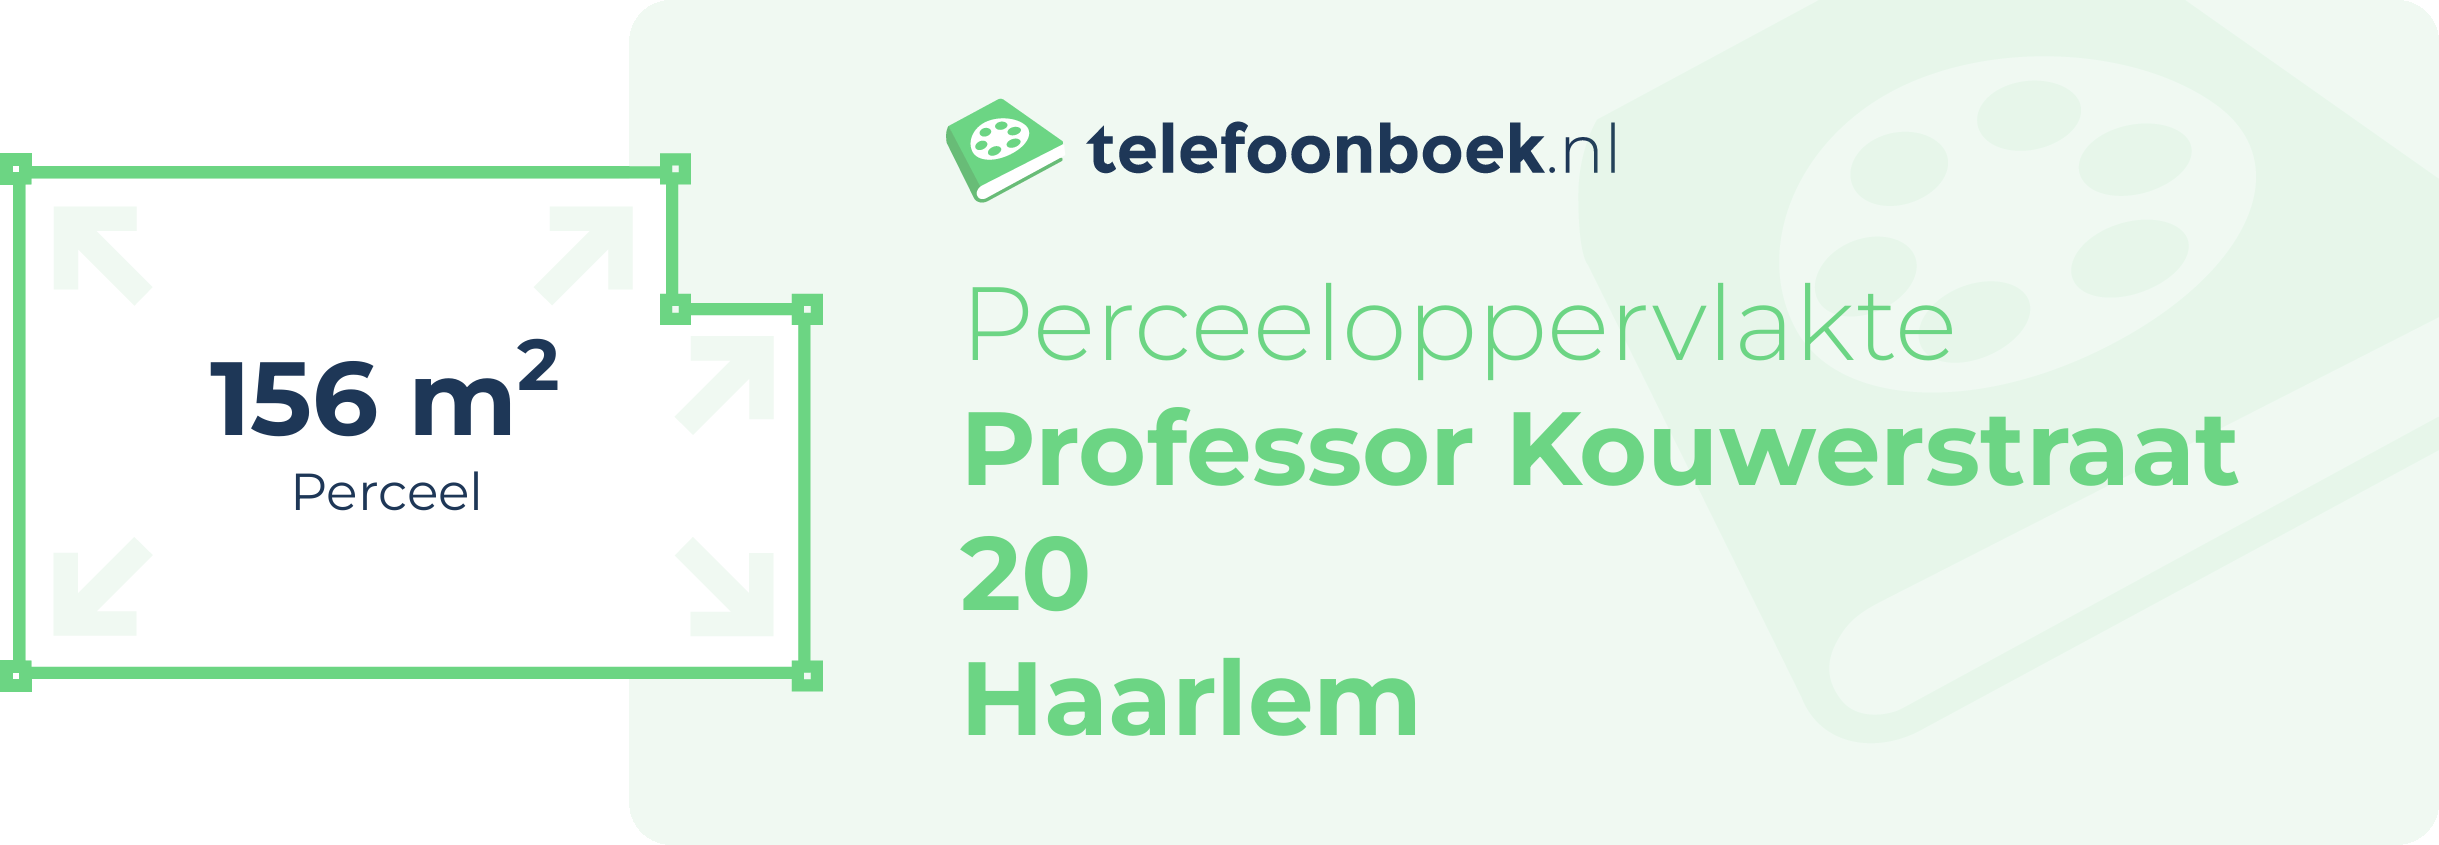 Perceeloppervlakte Professor Kouwerstraat 20 Haarlem